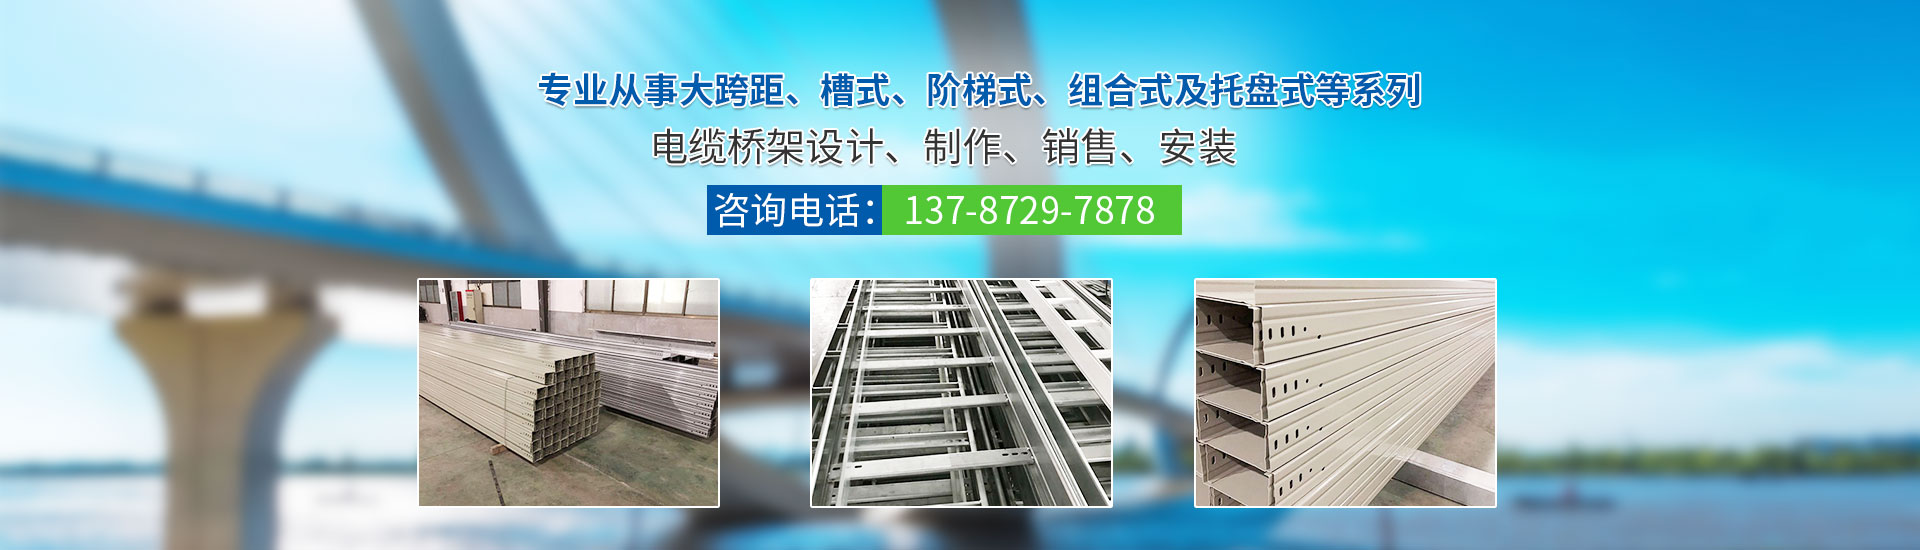 湖南振大电子科技有限公司_株洲母线槽生产销售|株洲电缆桥架生产销售